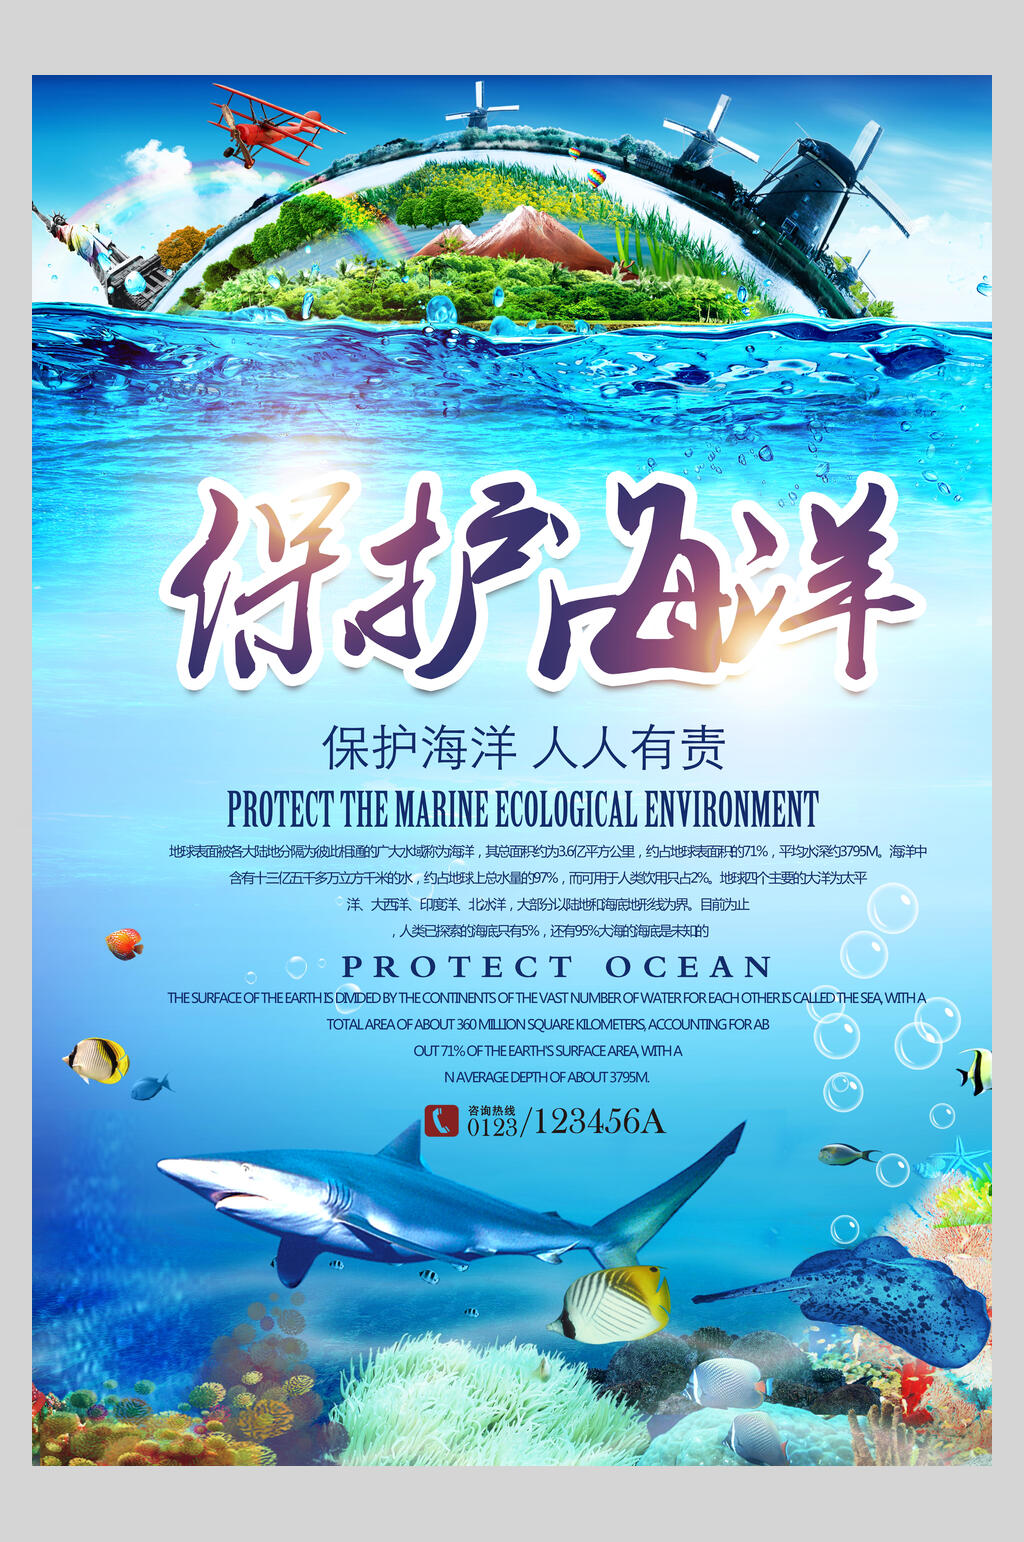 爱护海洋保护环境标语图片